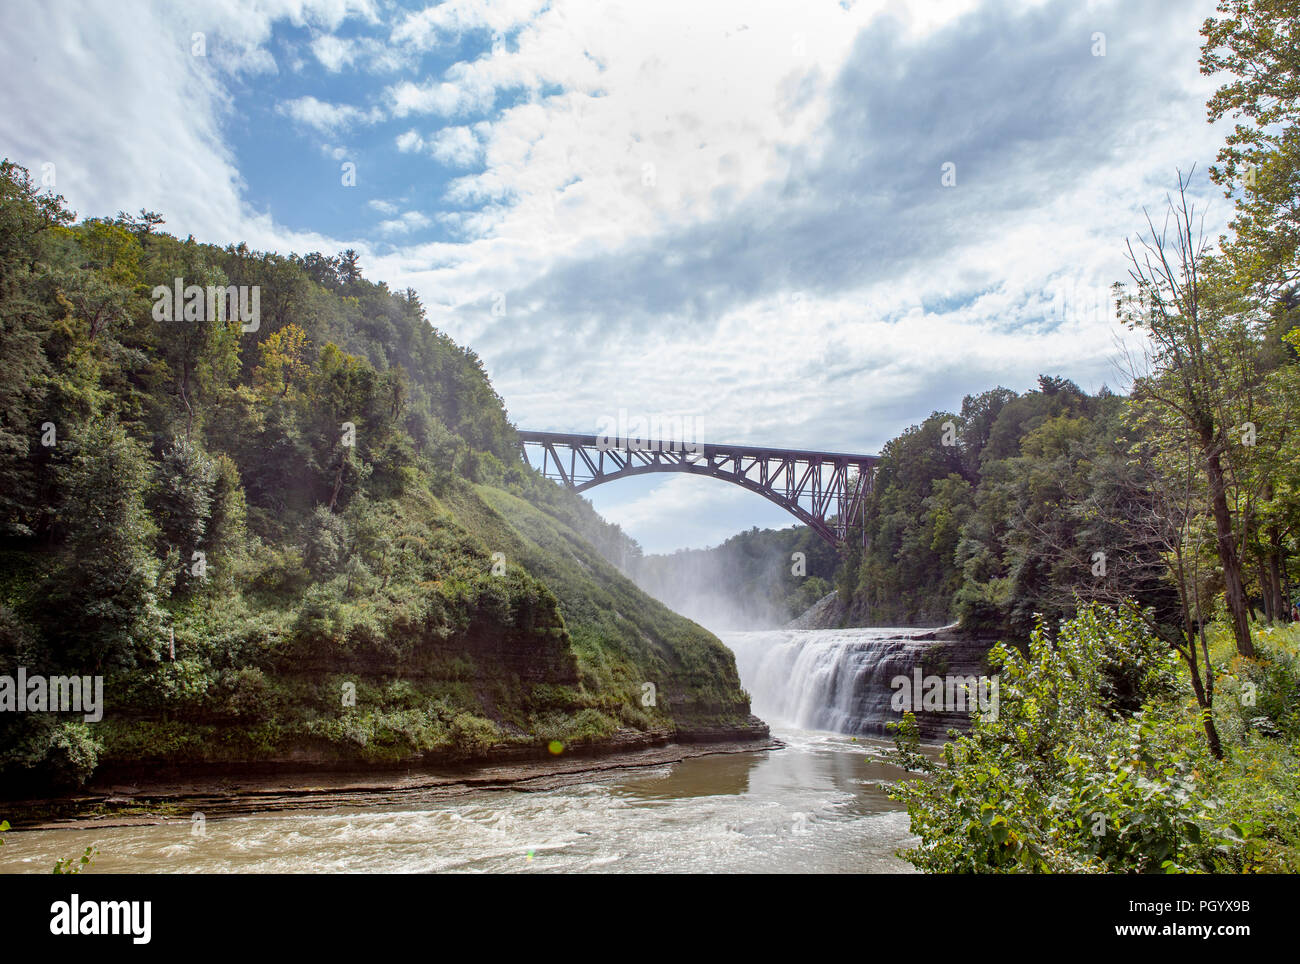 Le pont en arc de Genesee passe au-dessus de la rivière Genesee et passé une cascade à Letchworth State Park en Castille, NY, USA. Banque D'Images